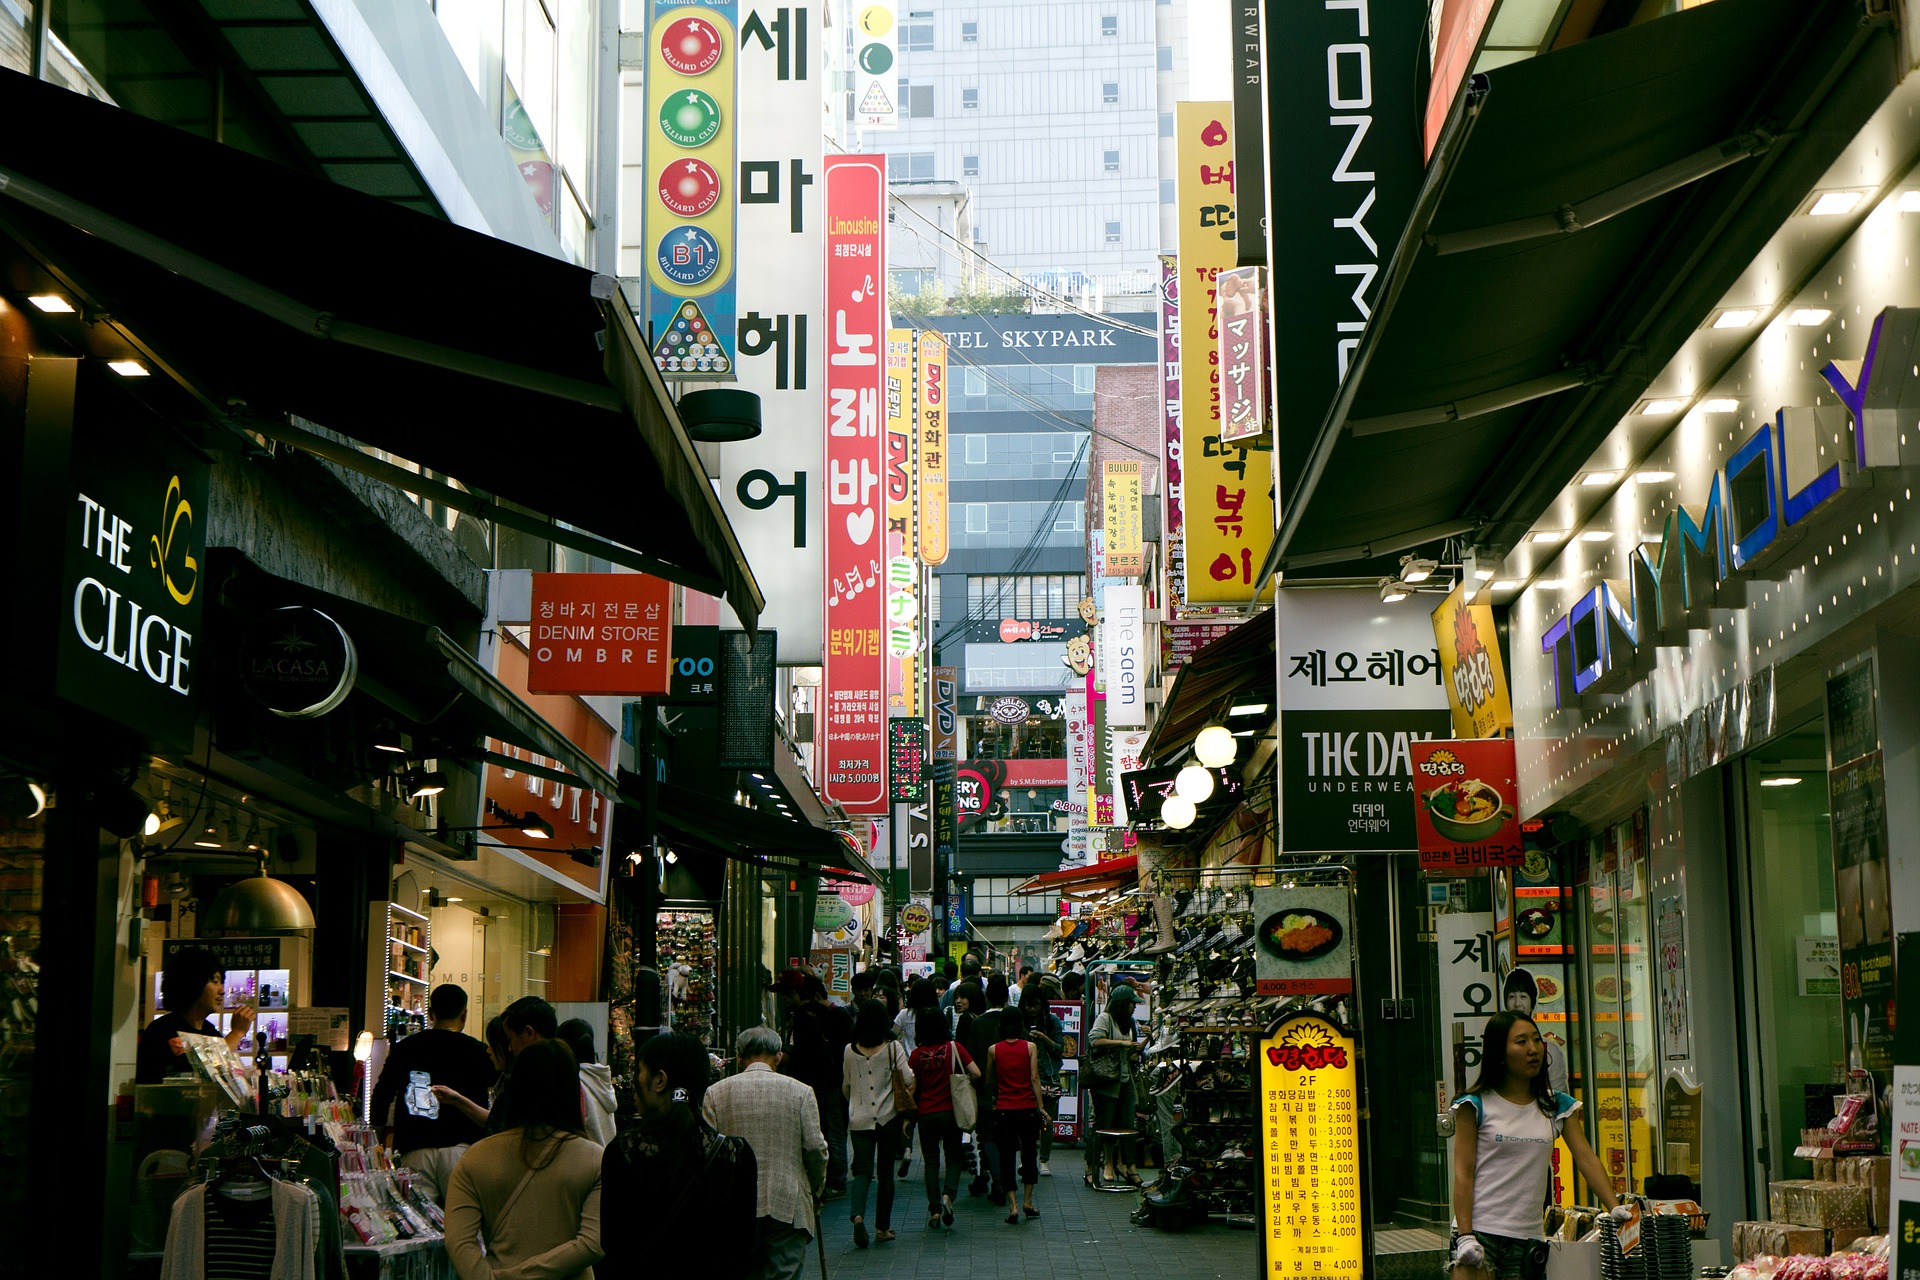 أين أتسوق في سيئول ؟ أفضل 6 أماكن تسوق في عاصمة كوريا الجنوبية